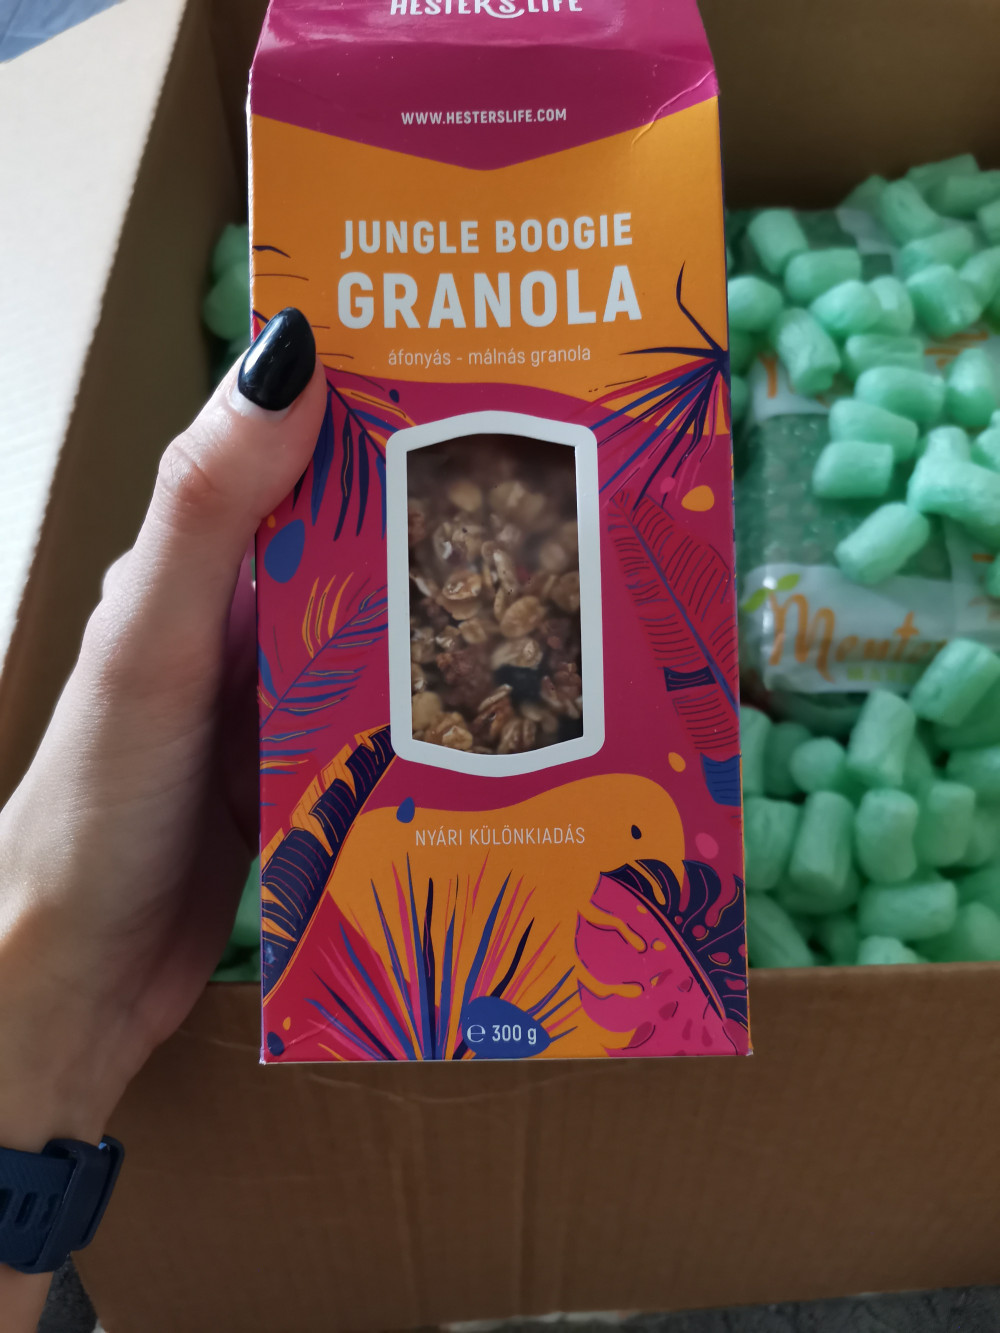   Hester' Life gluténmentes Jungle Boogie granola - áfonyás-málnás 300 g
